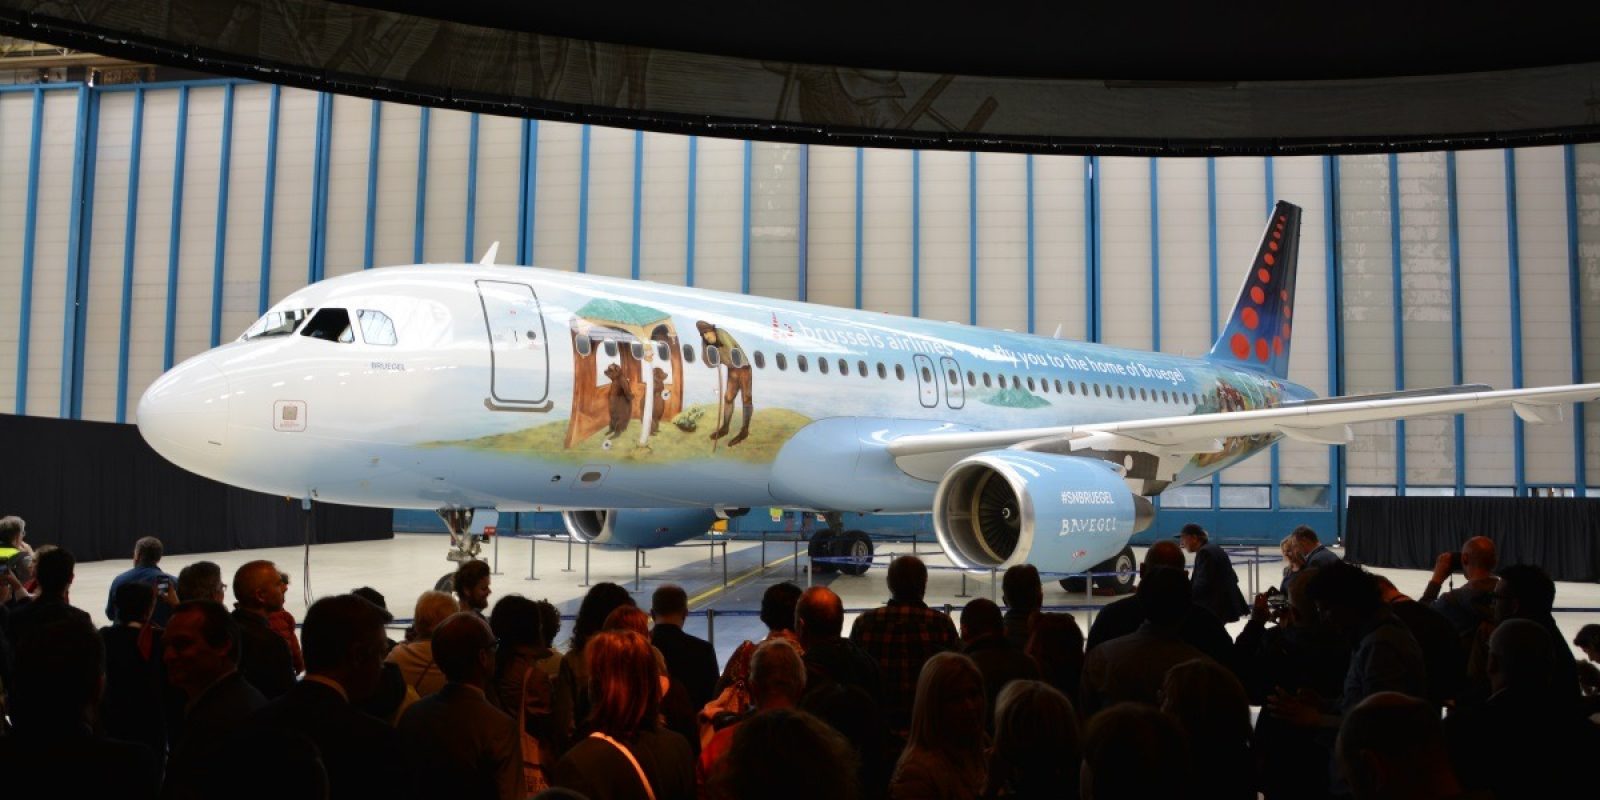 Met trots stelde Brussels Airlines de Bruegel Icon voor, een kunstwerk dat gecreëerd werd in samenwerking met Toerisme Vlaanderen en Bozar.